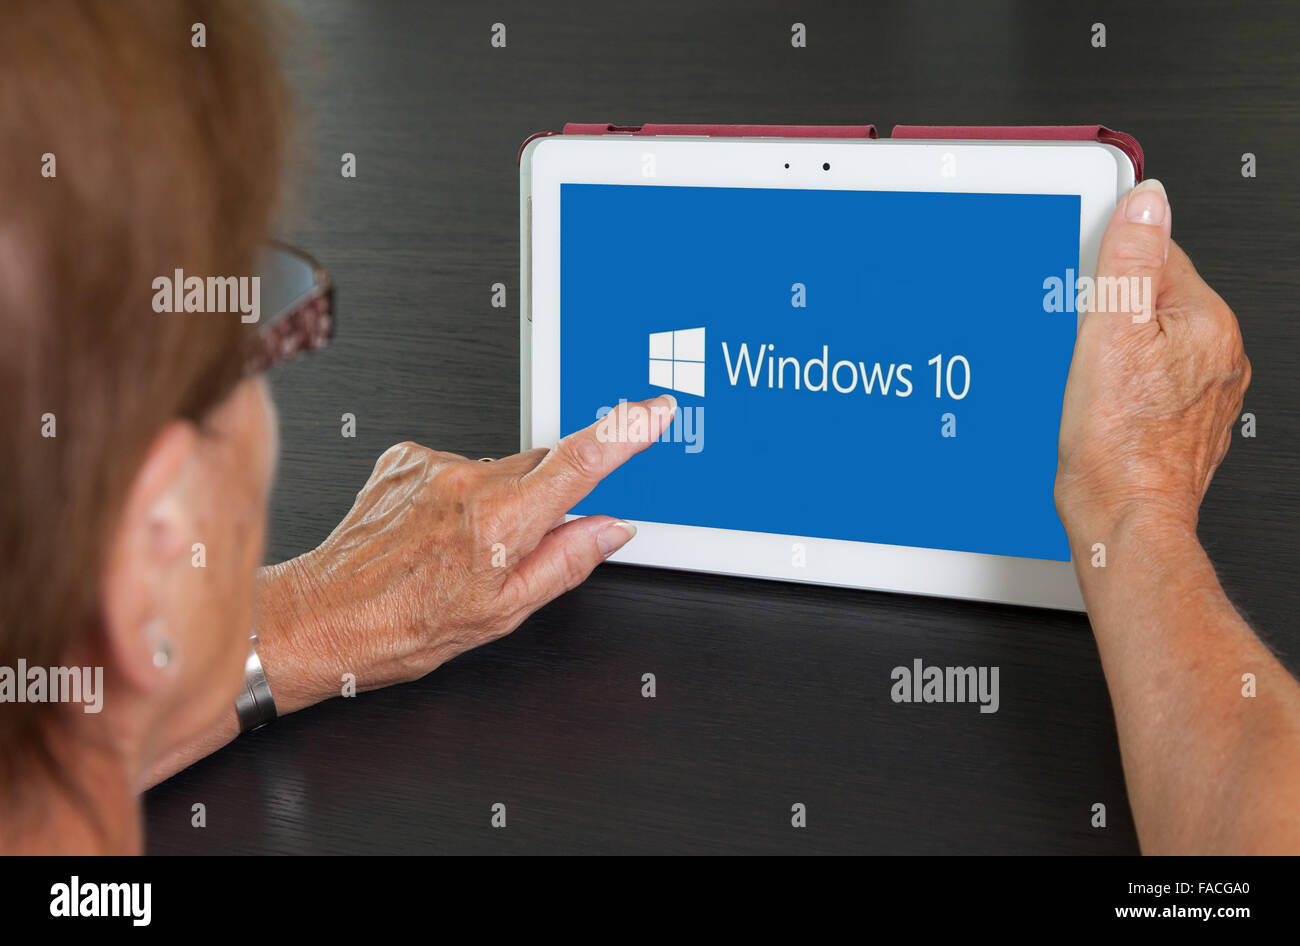 HEERENVEEN, Países Bajos, 6 de junio de 2015: el tablet PC con el logotipo de Windows 10. Windows 10 es la nueva versión del sistema operativo Windows por MICR Foto de stock